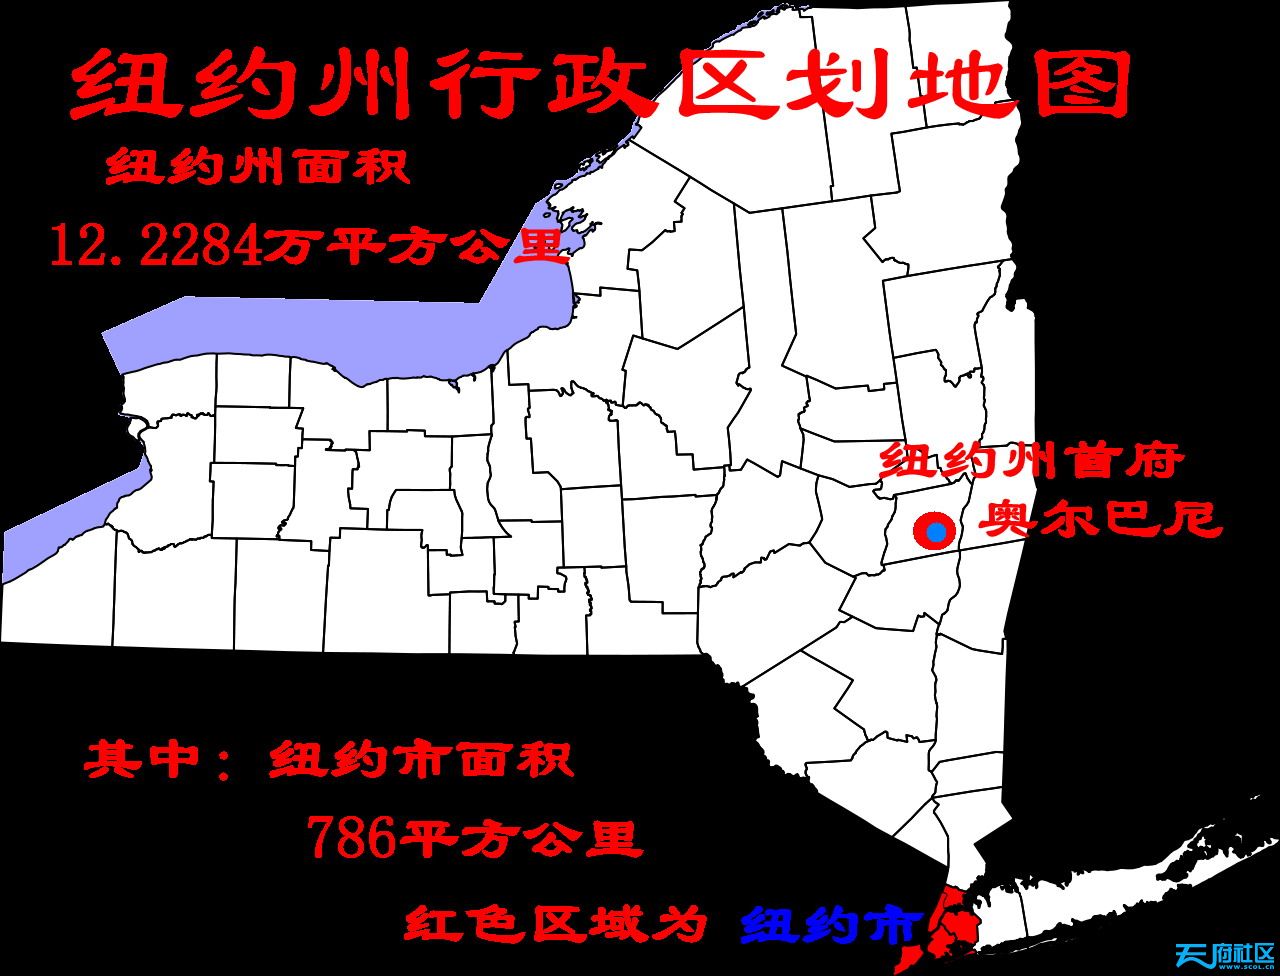 先上几幅图   第一幅图为 纽约州地图,纽约州面积12